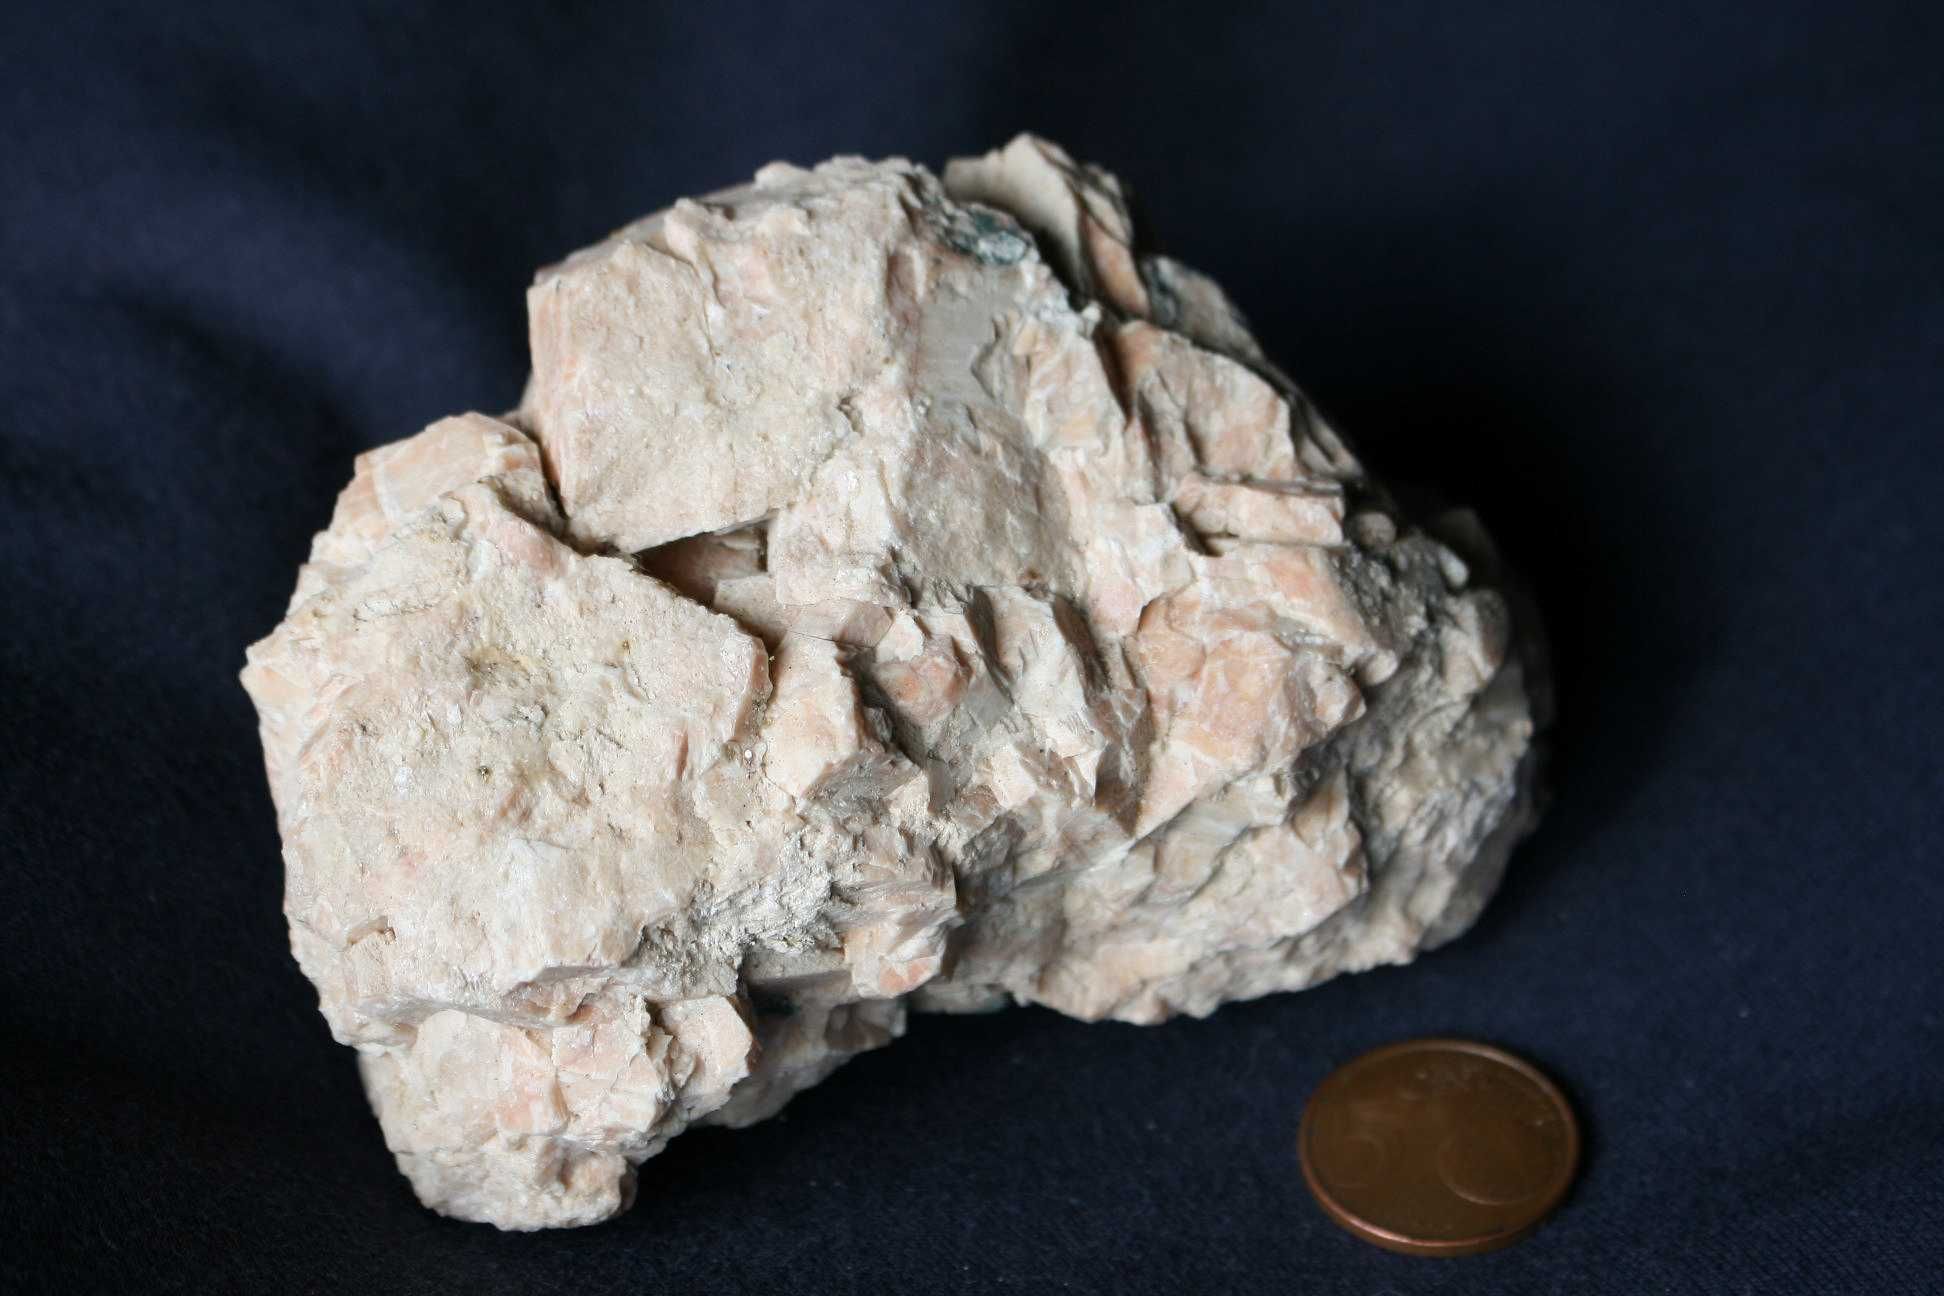 Minerais – Feldspato potássico de Pereira de Selão (inclui envio)